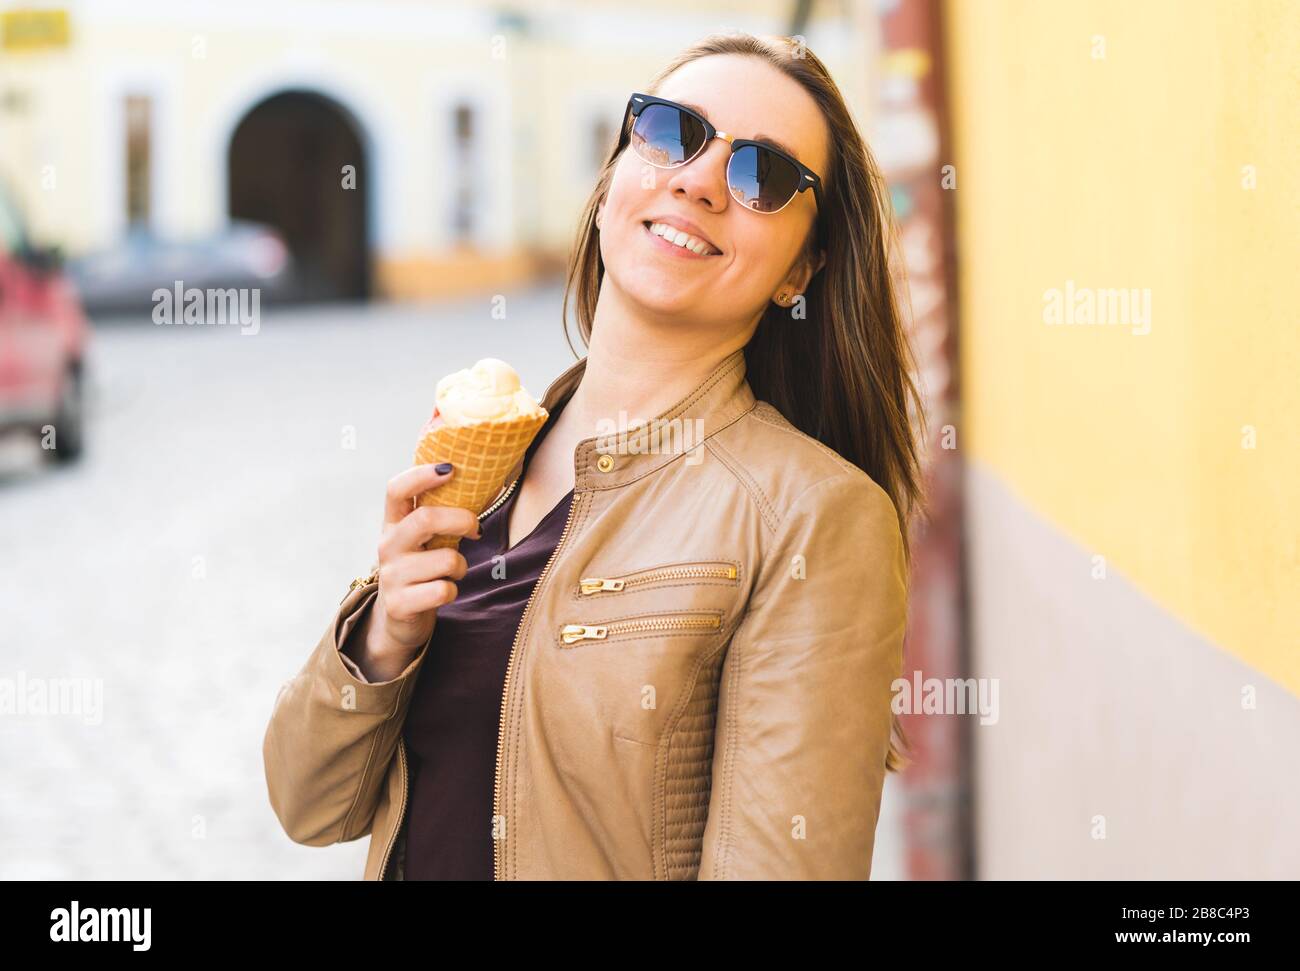 Aufgeregte und energische Frau, die Eiskegel in der Stadt hält. Fröhlicher stilvoller Mensch, der süße Leckerbissen in der städtischen Straße isst. Stockfoto